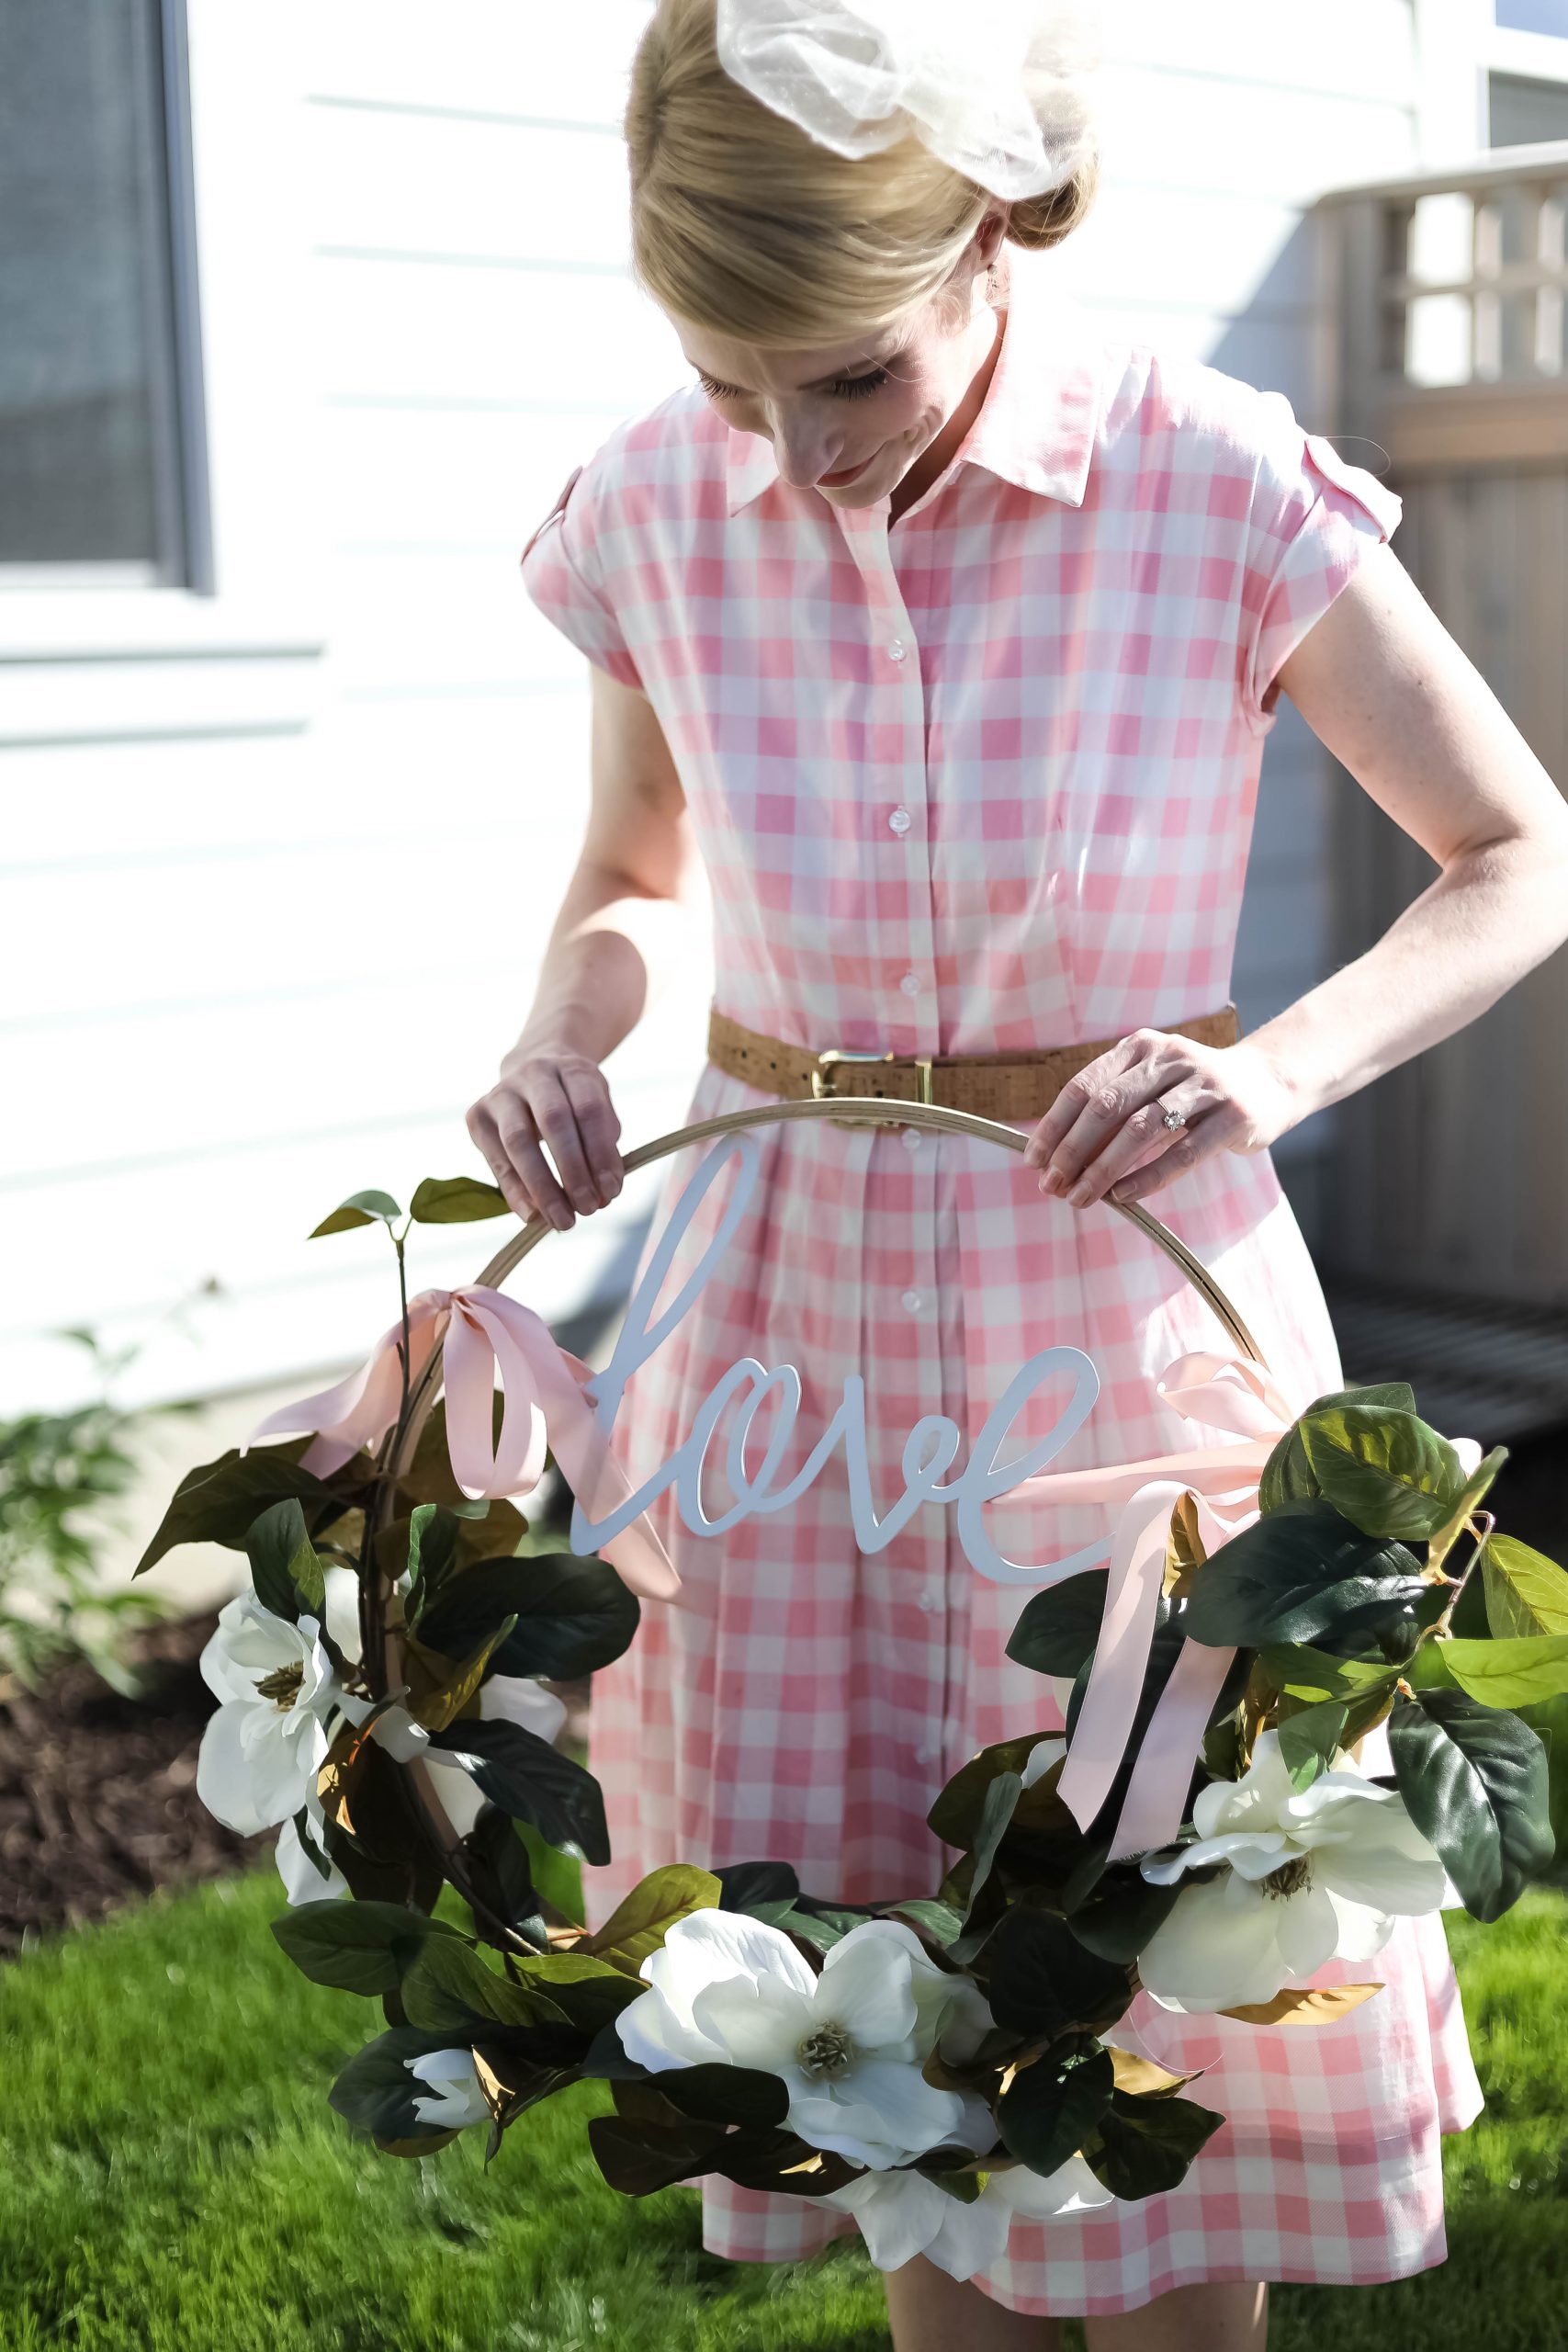 Make a DIY Magnolia Garden Wreath perfect for Summer!